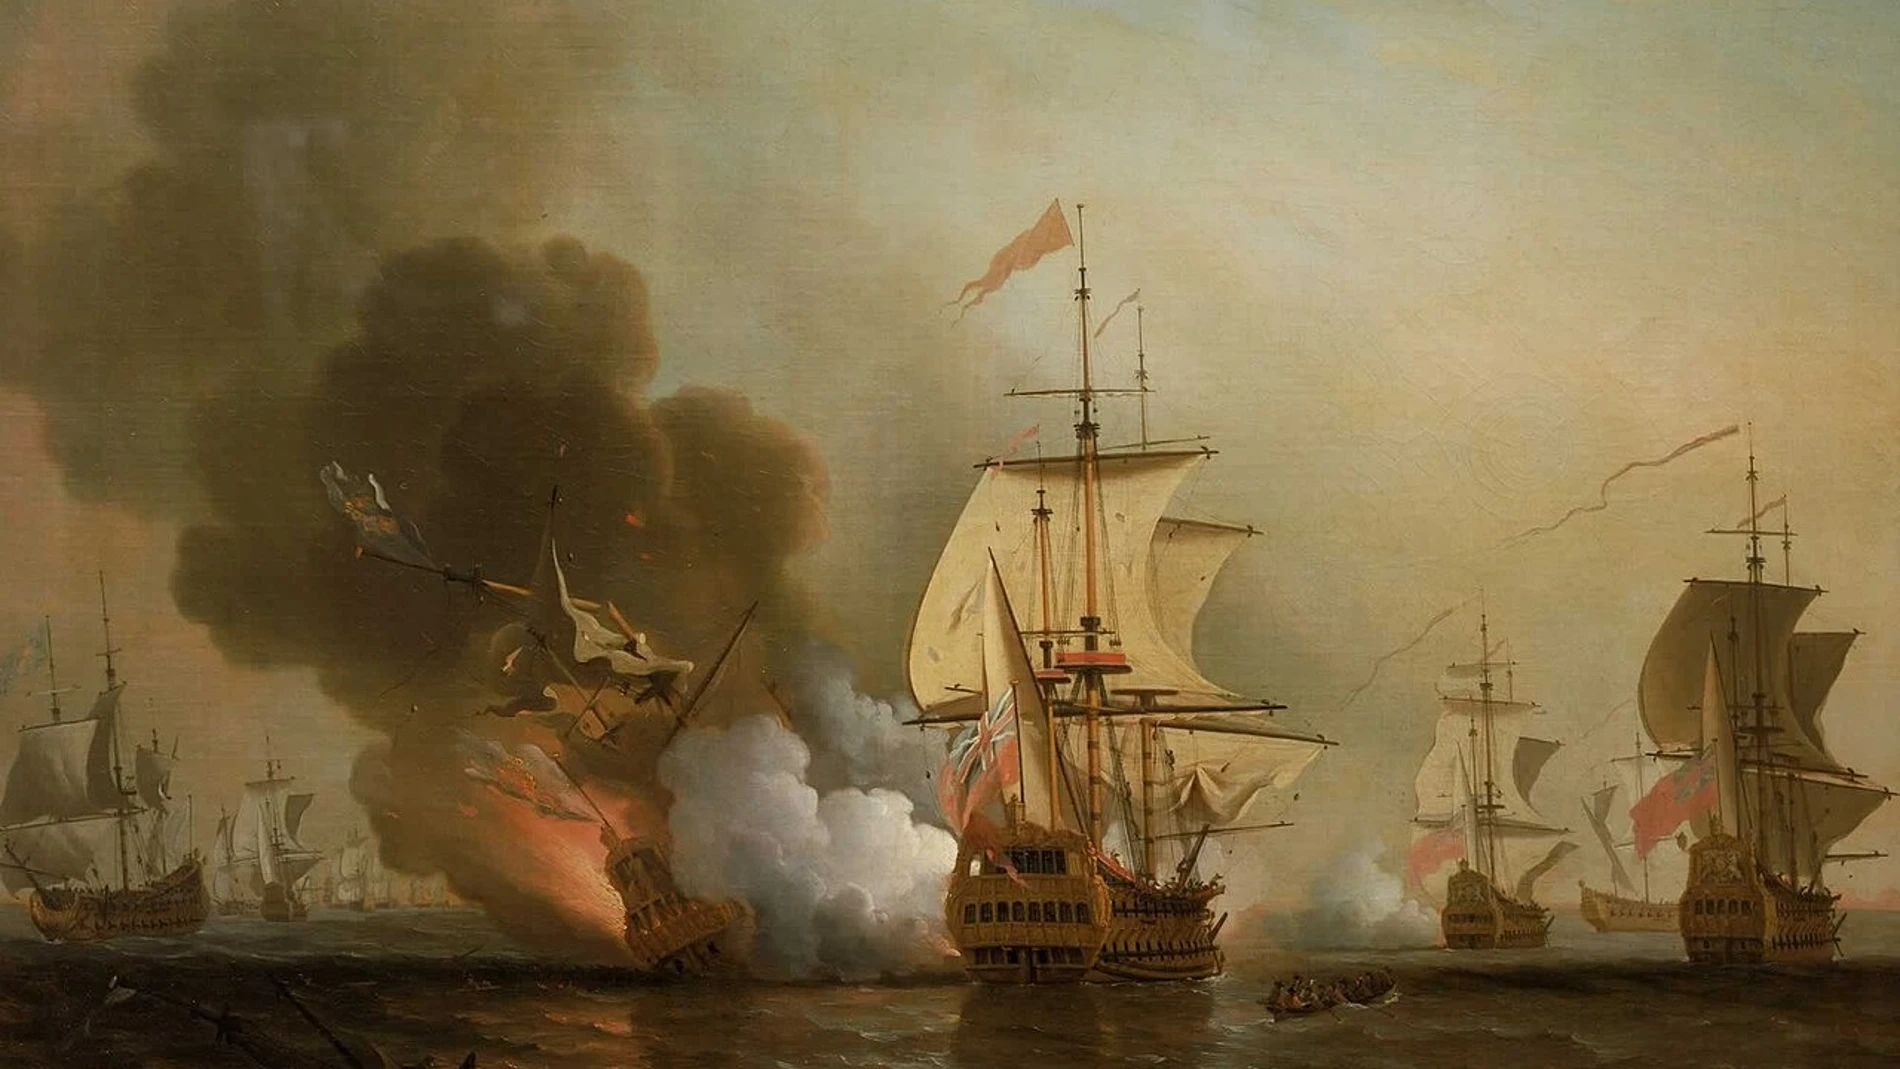 El pintor británico Samuel Scott recreó al óleo la inmensidad del galeón San José, en un cuadro pintado ya en 1772 y que ahora cuelga del Museo Marítimo Nacional de Londres